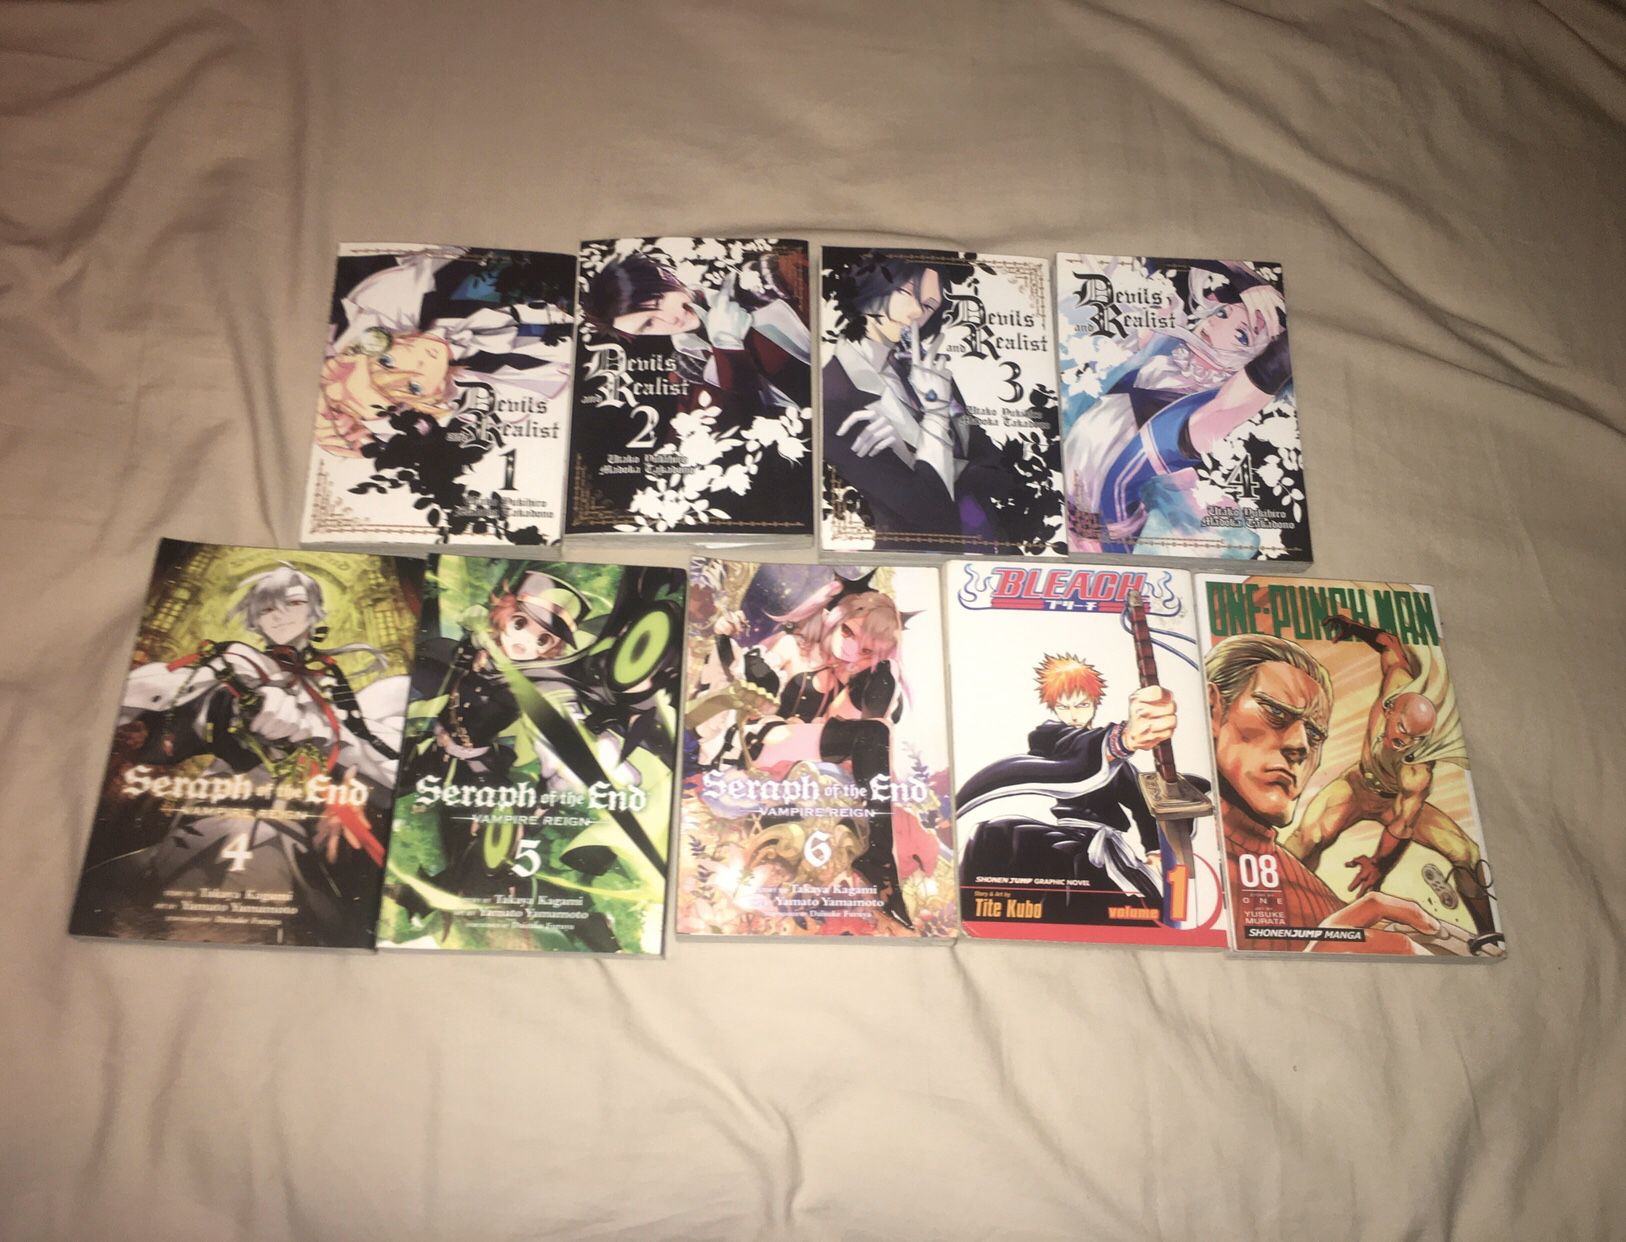 Manga ($4 each) ($25 for all obo)